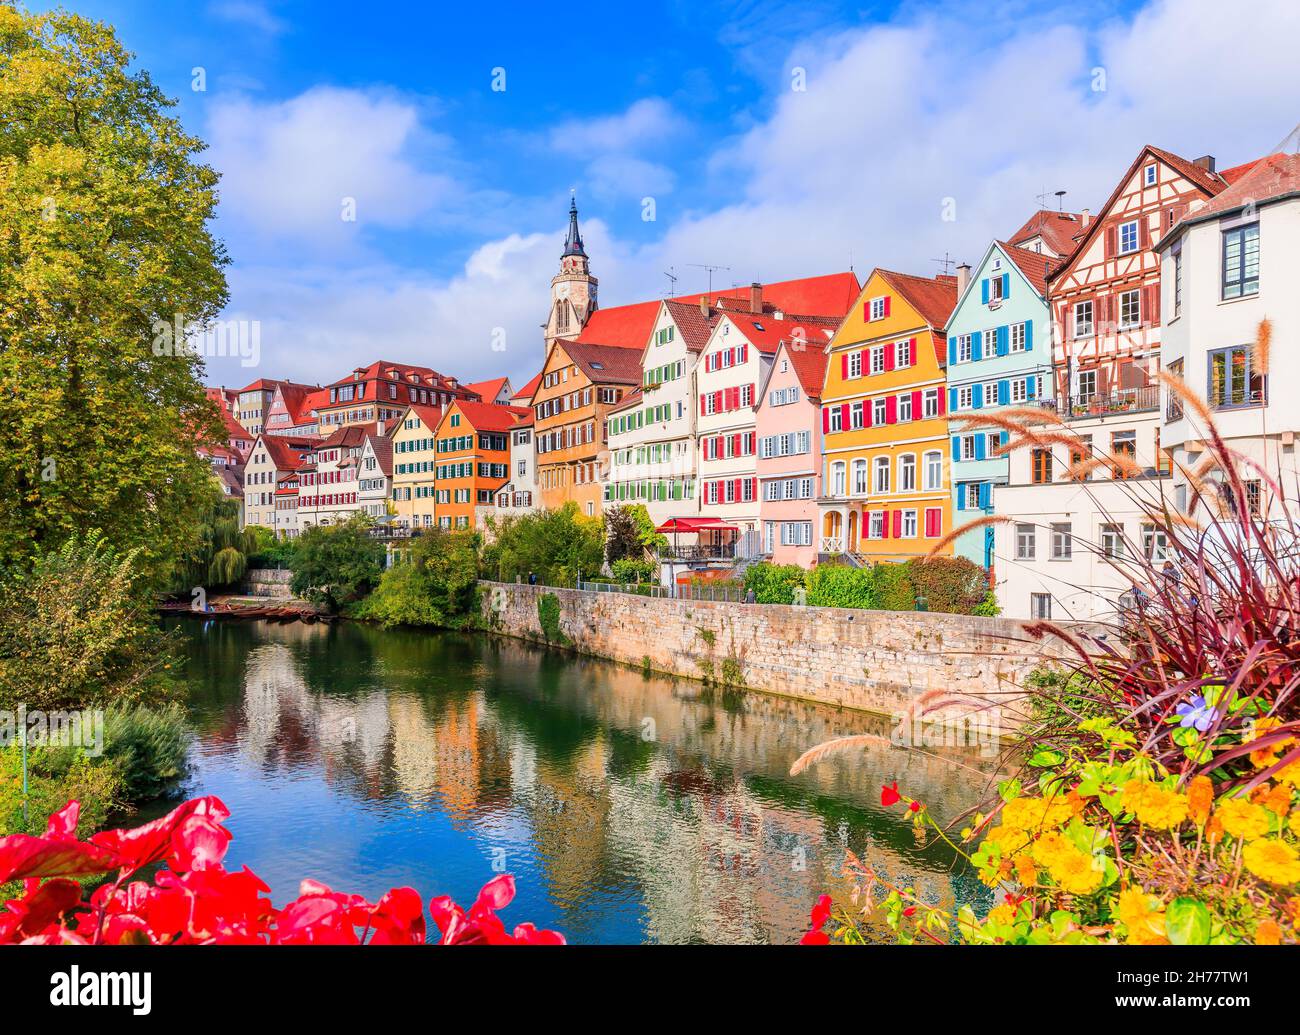 Tubingen, Allemagne.Vieille ville colorée sur la rivière Neckar. Banque D'Images